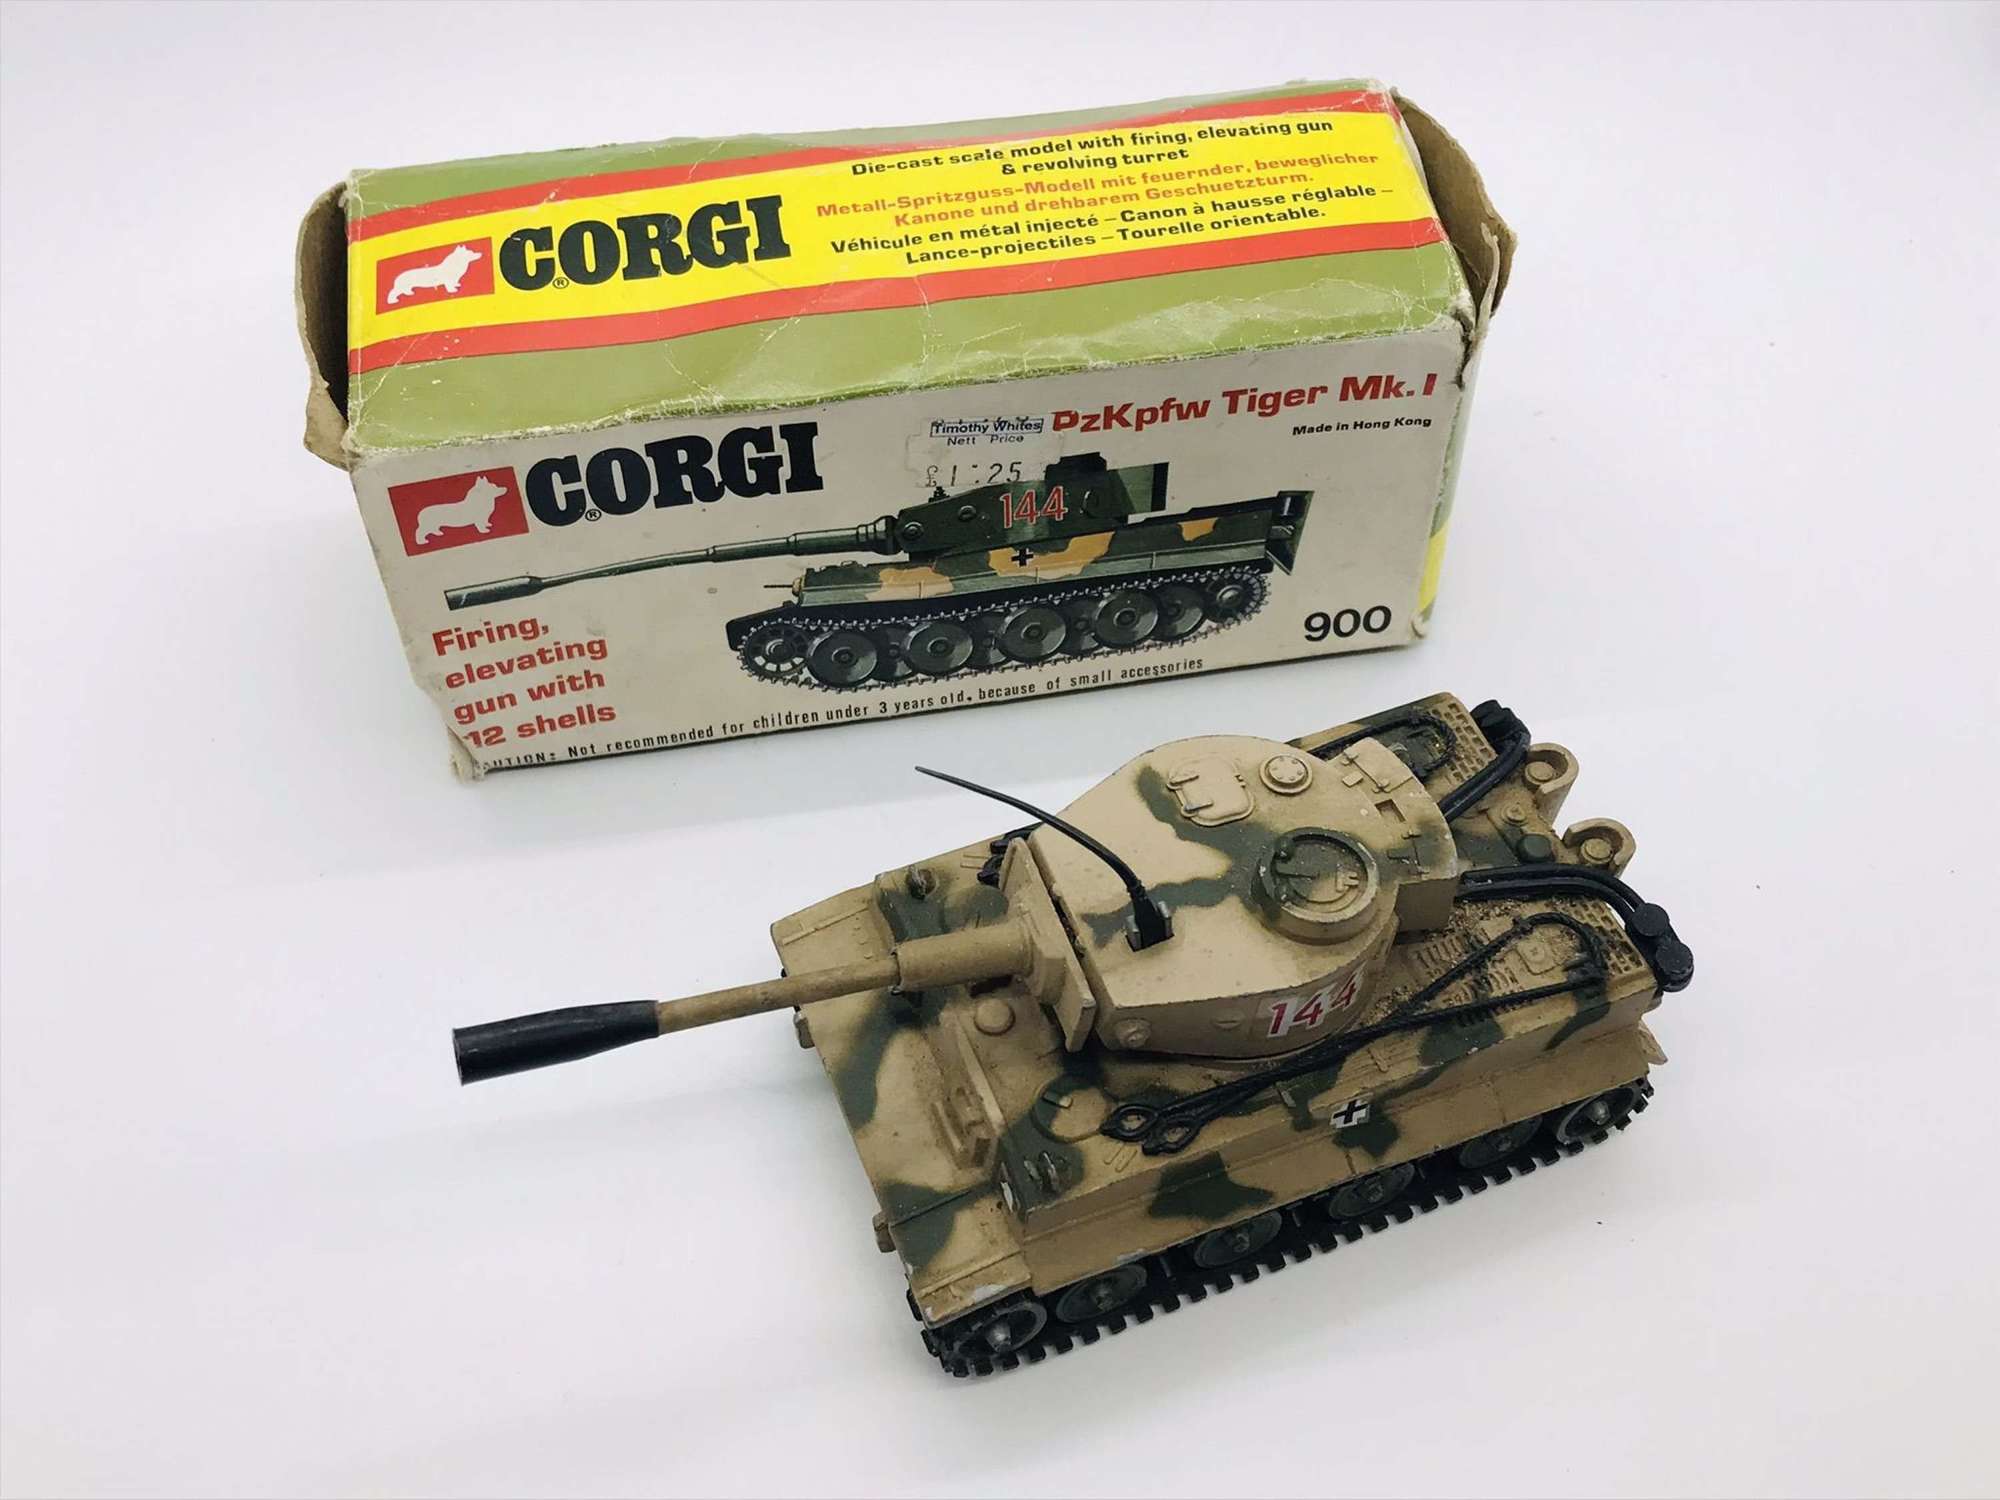 Boxed Corgi Tiger tank model